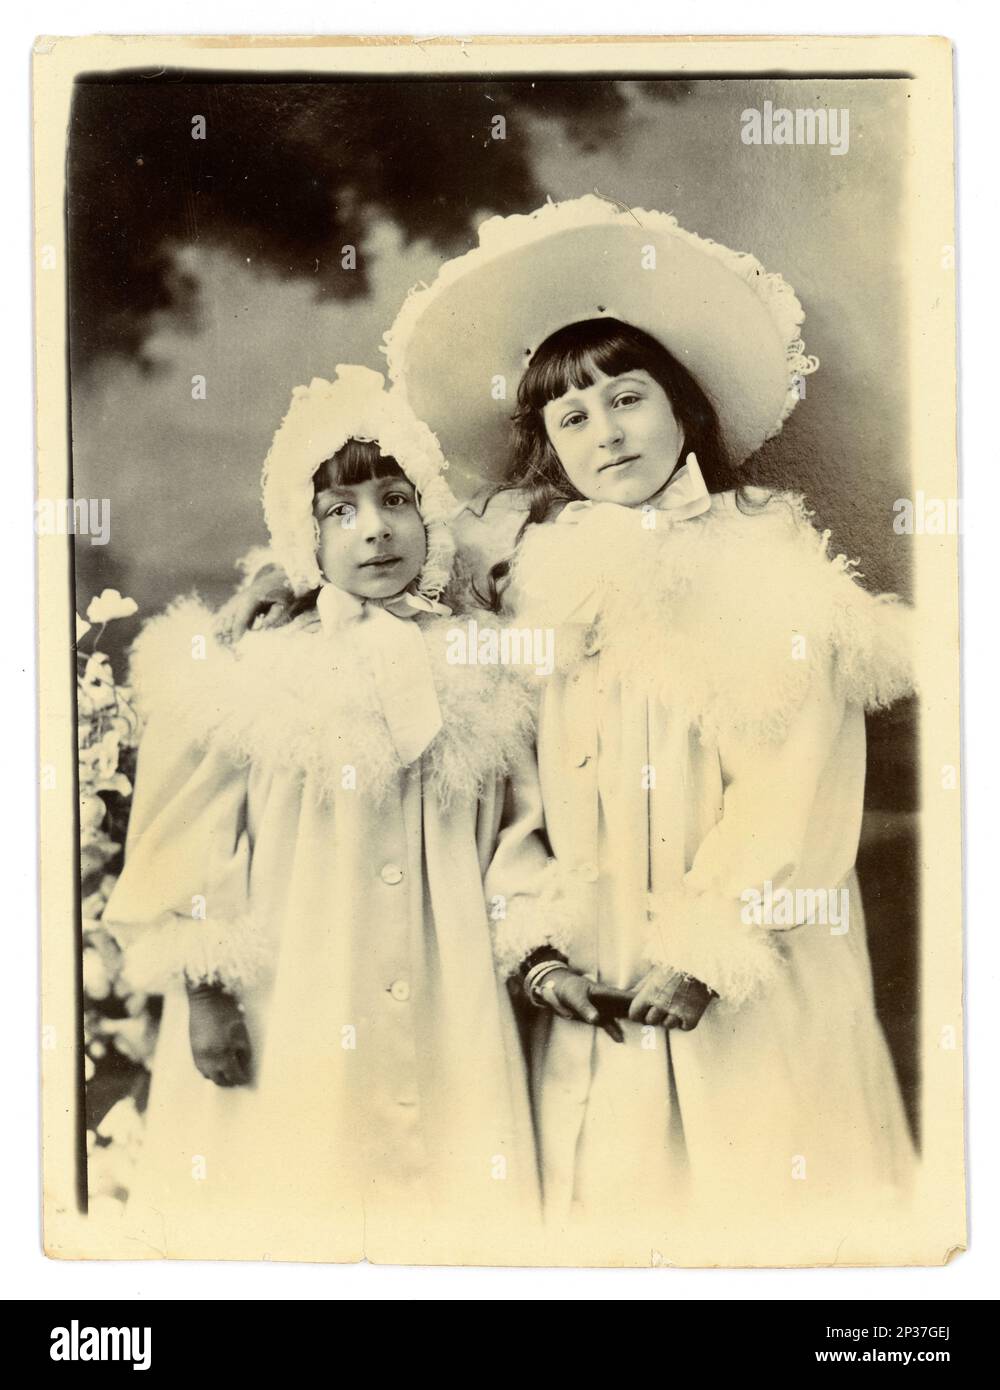 Originale fotografia vittoriana di 2 giovani ragazze sorridenti, fratelli, in camici bianchi rifiniti con piume di struzzo, cofani e cappello coordinati, indossando guanti. Circa 1898, area di Worcester, Regno Unito Foto Stock